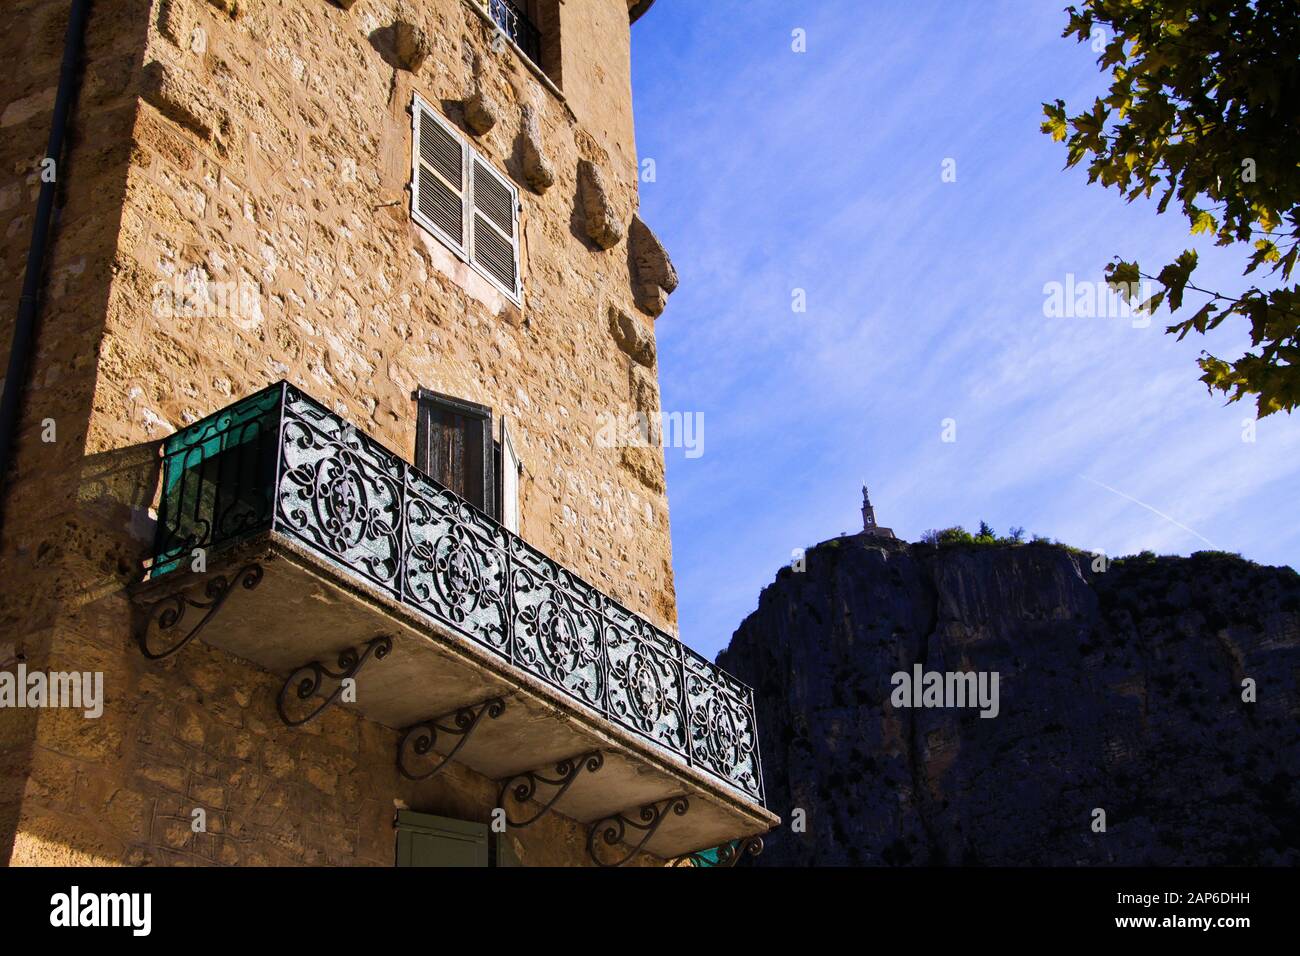 Vue à bas angle sur la façade en pierre de la maison française typique et balcon avec travaux de treillis anciens. Église sur fond de montagne - Castellane, F Banque D'Images